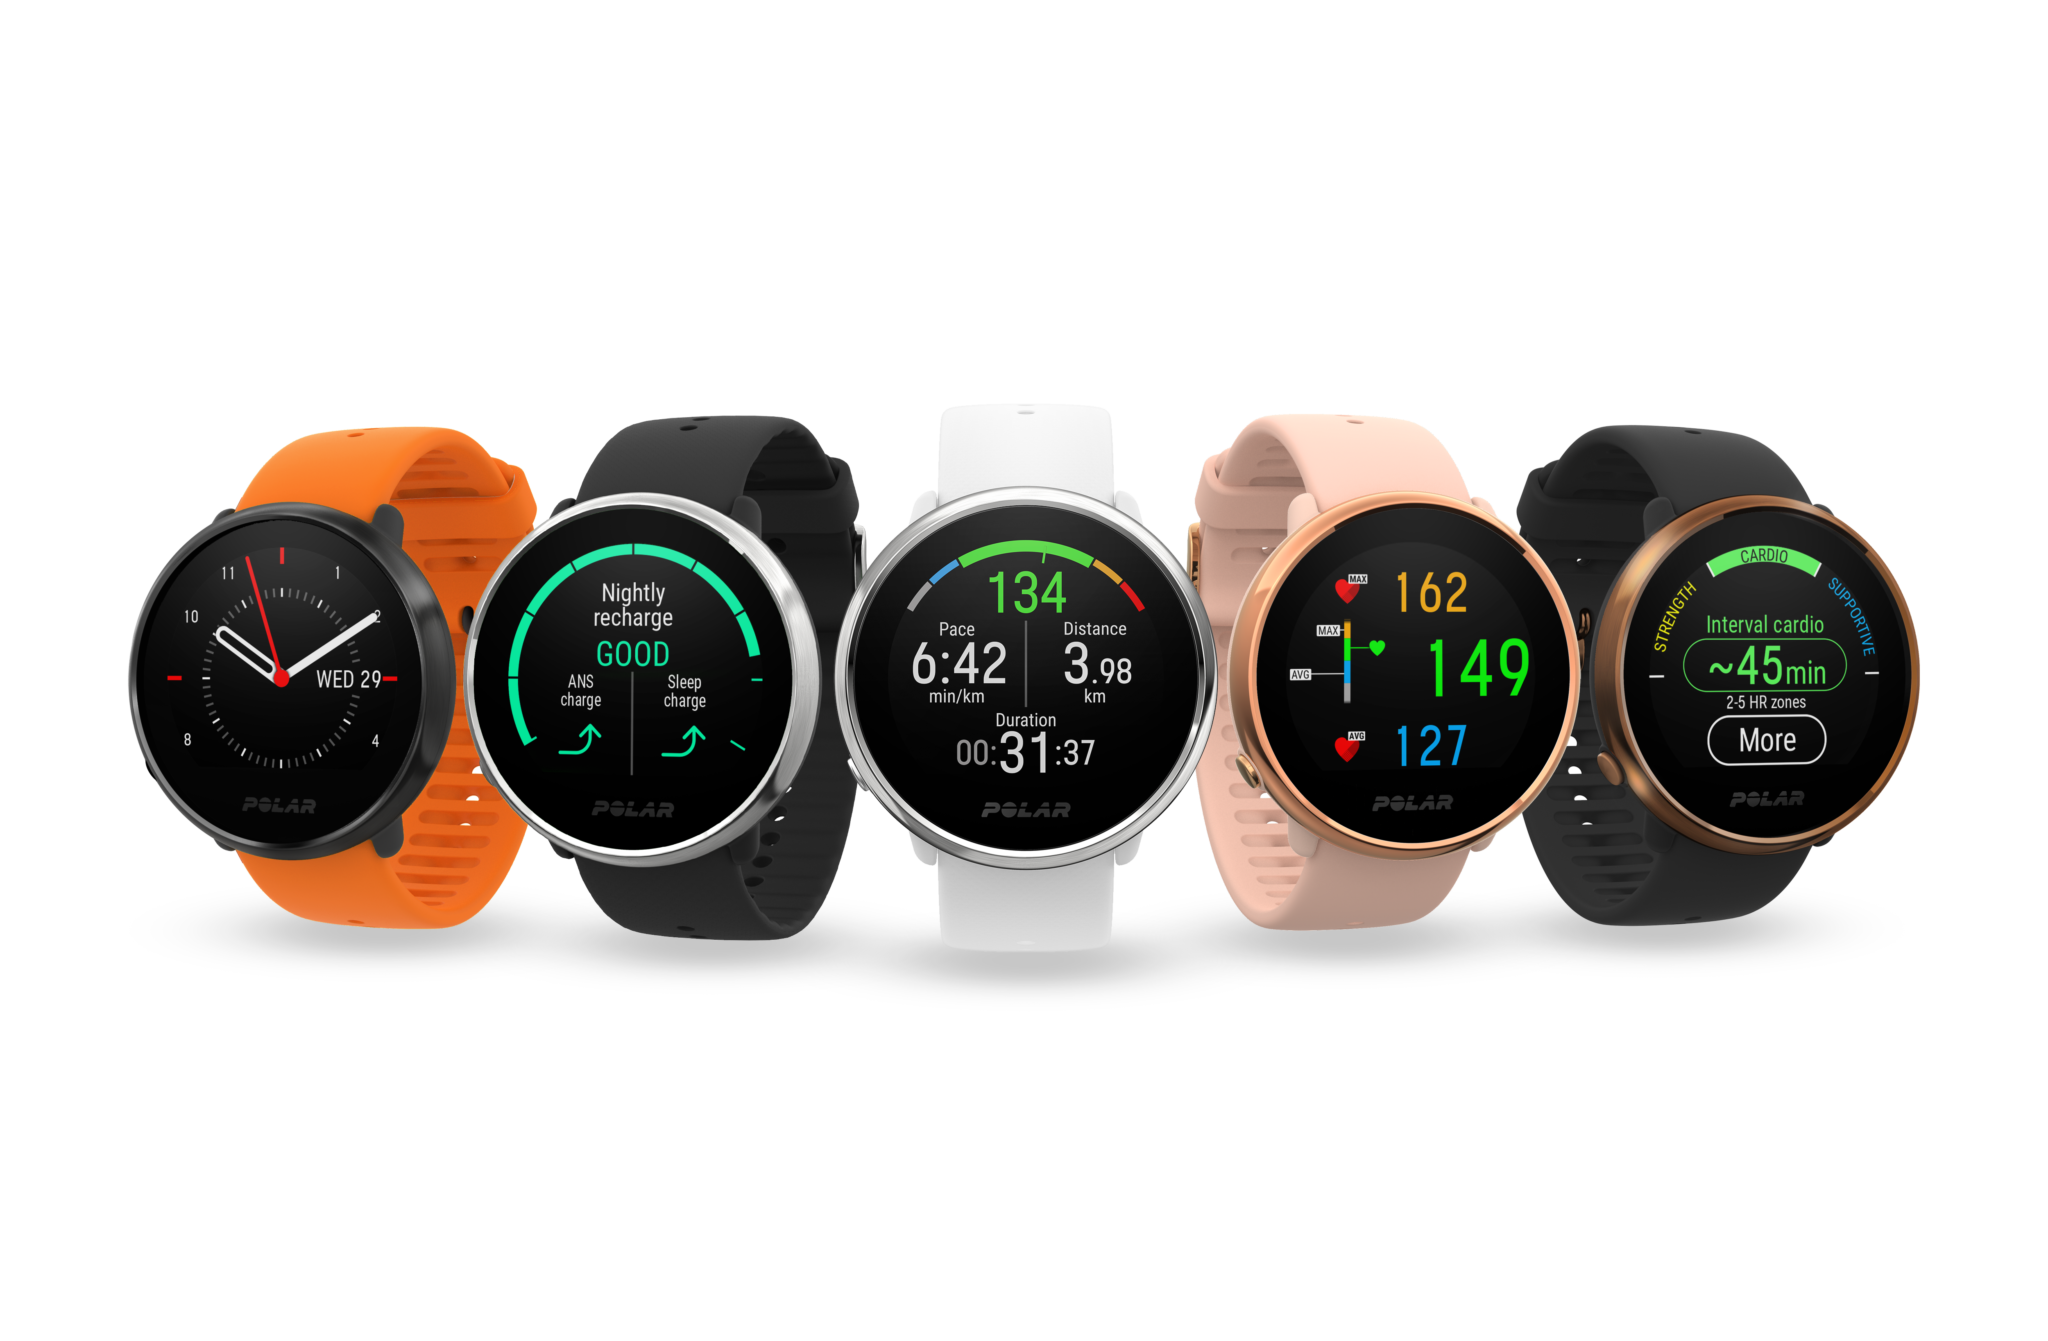 ポラール、GPS 搭載フィットネスウォッチ「Polar Ignite」に人気カラーのオレンジを追加 - Smart Watch Life｜日本